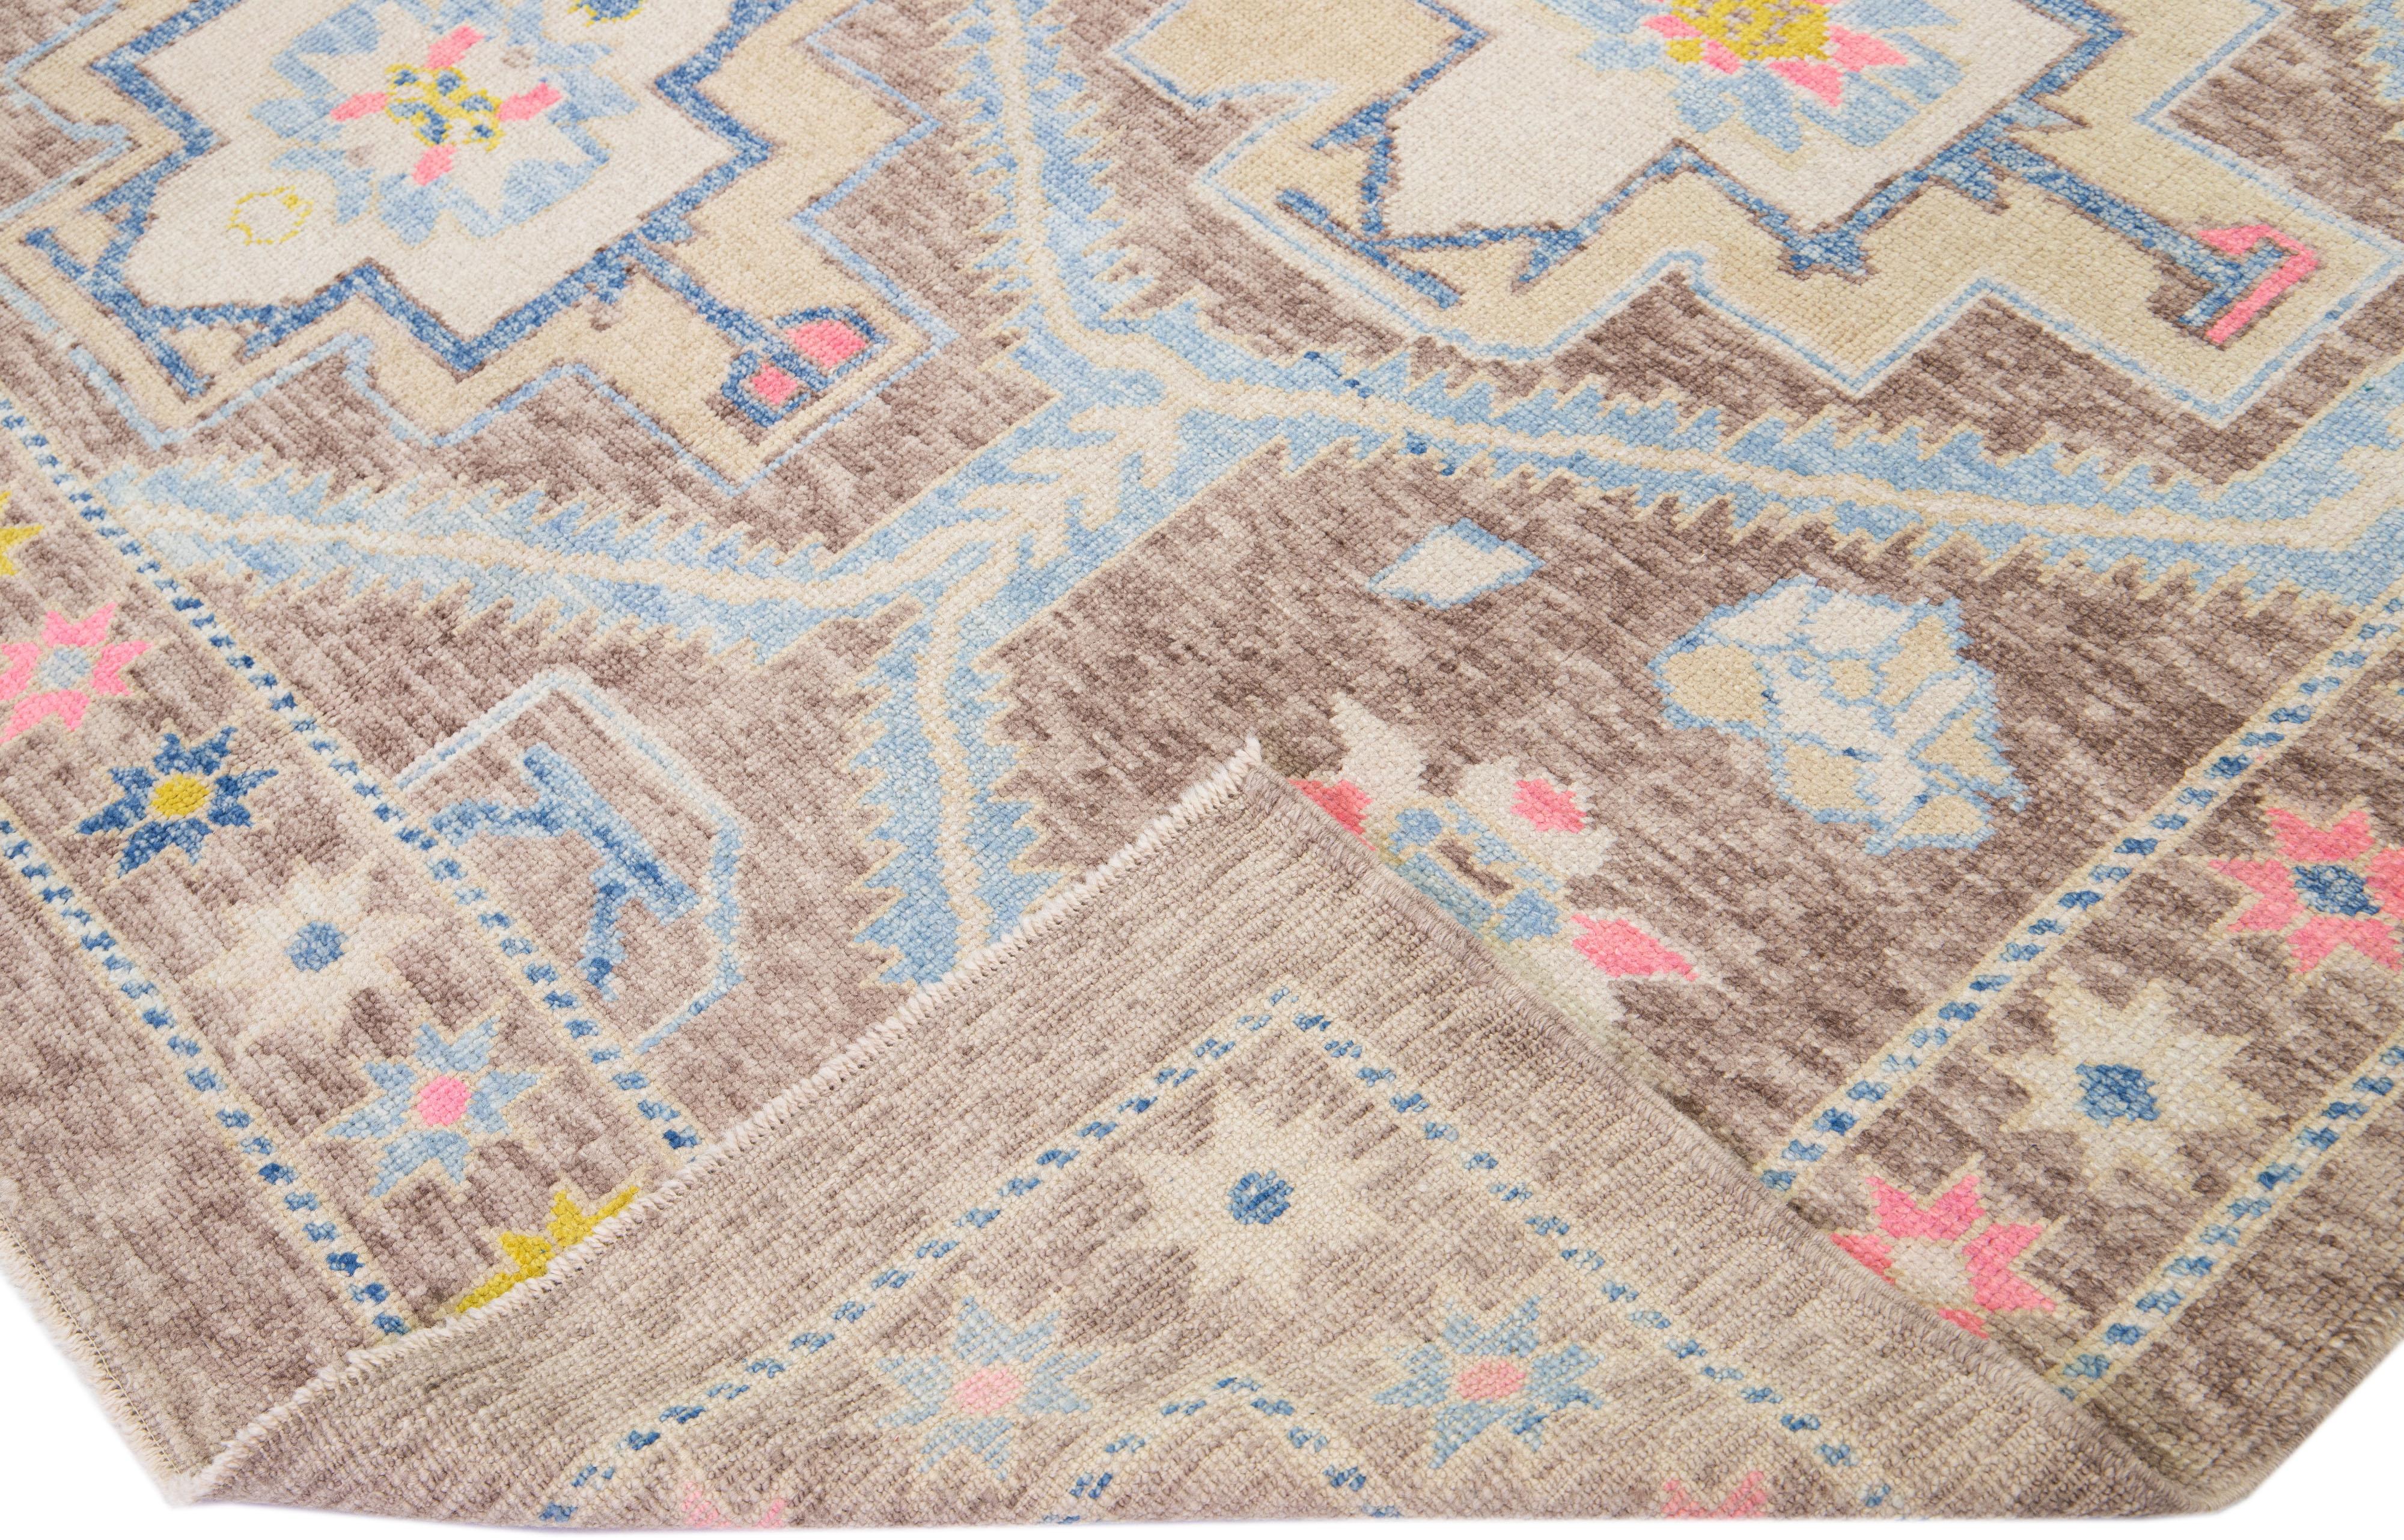 Magnifique tapis turc moderne en laine nouée à la main avec un champ de couleur marron et des accents bleus, roses et beiges dans un magnifique motif floral géométrique.

Ce tapis mesure : 9'4